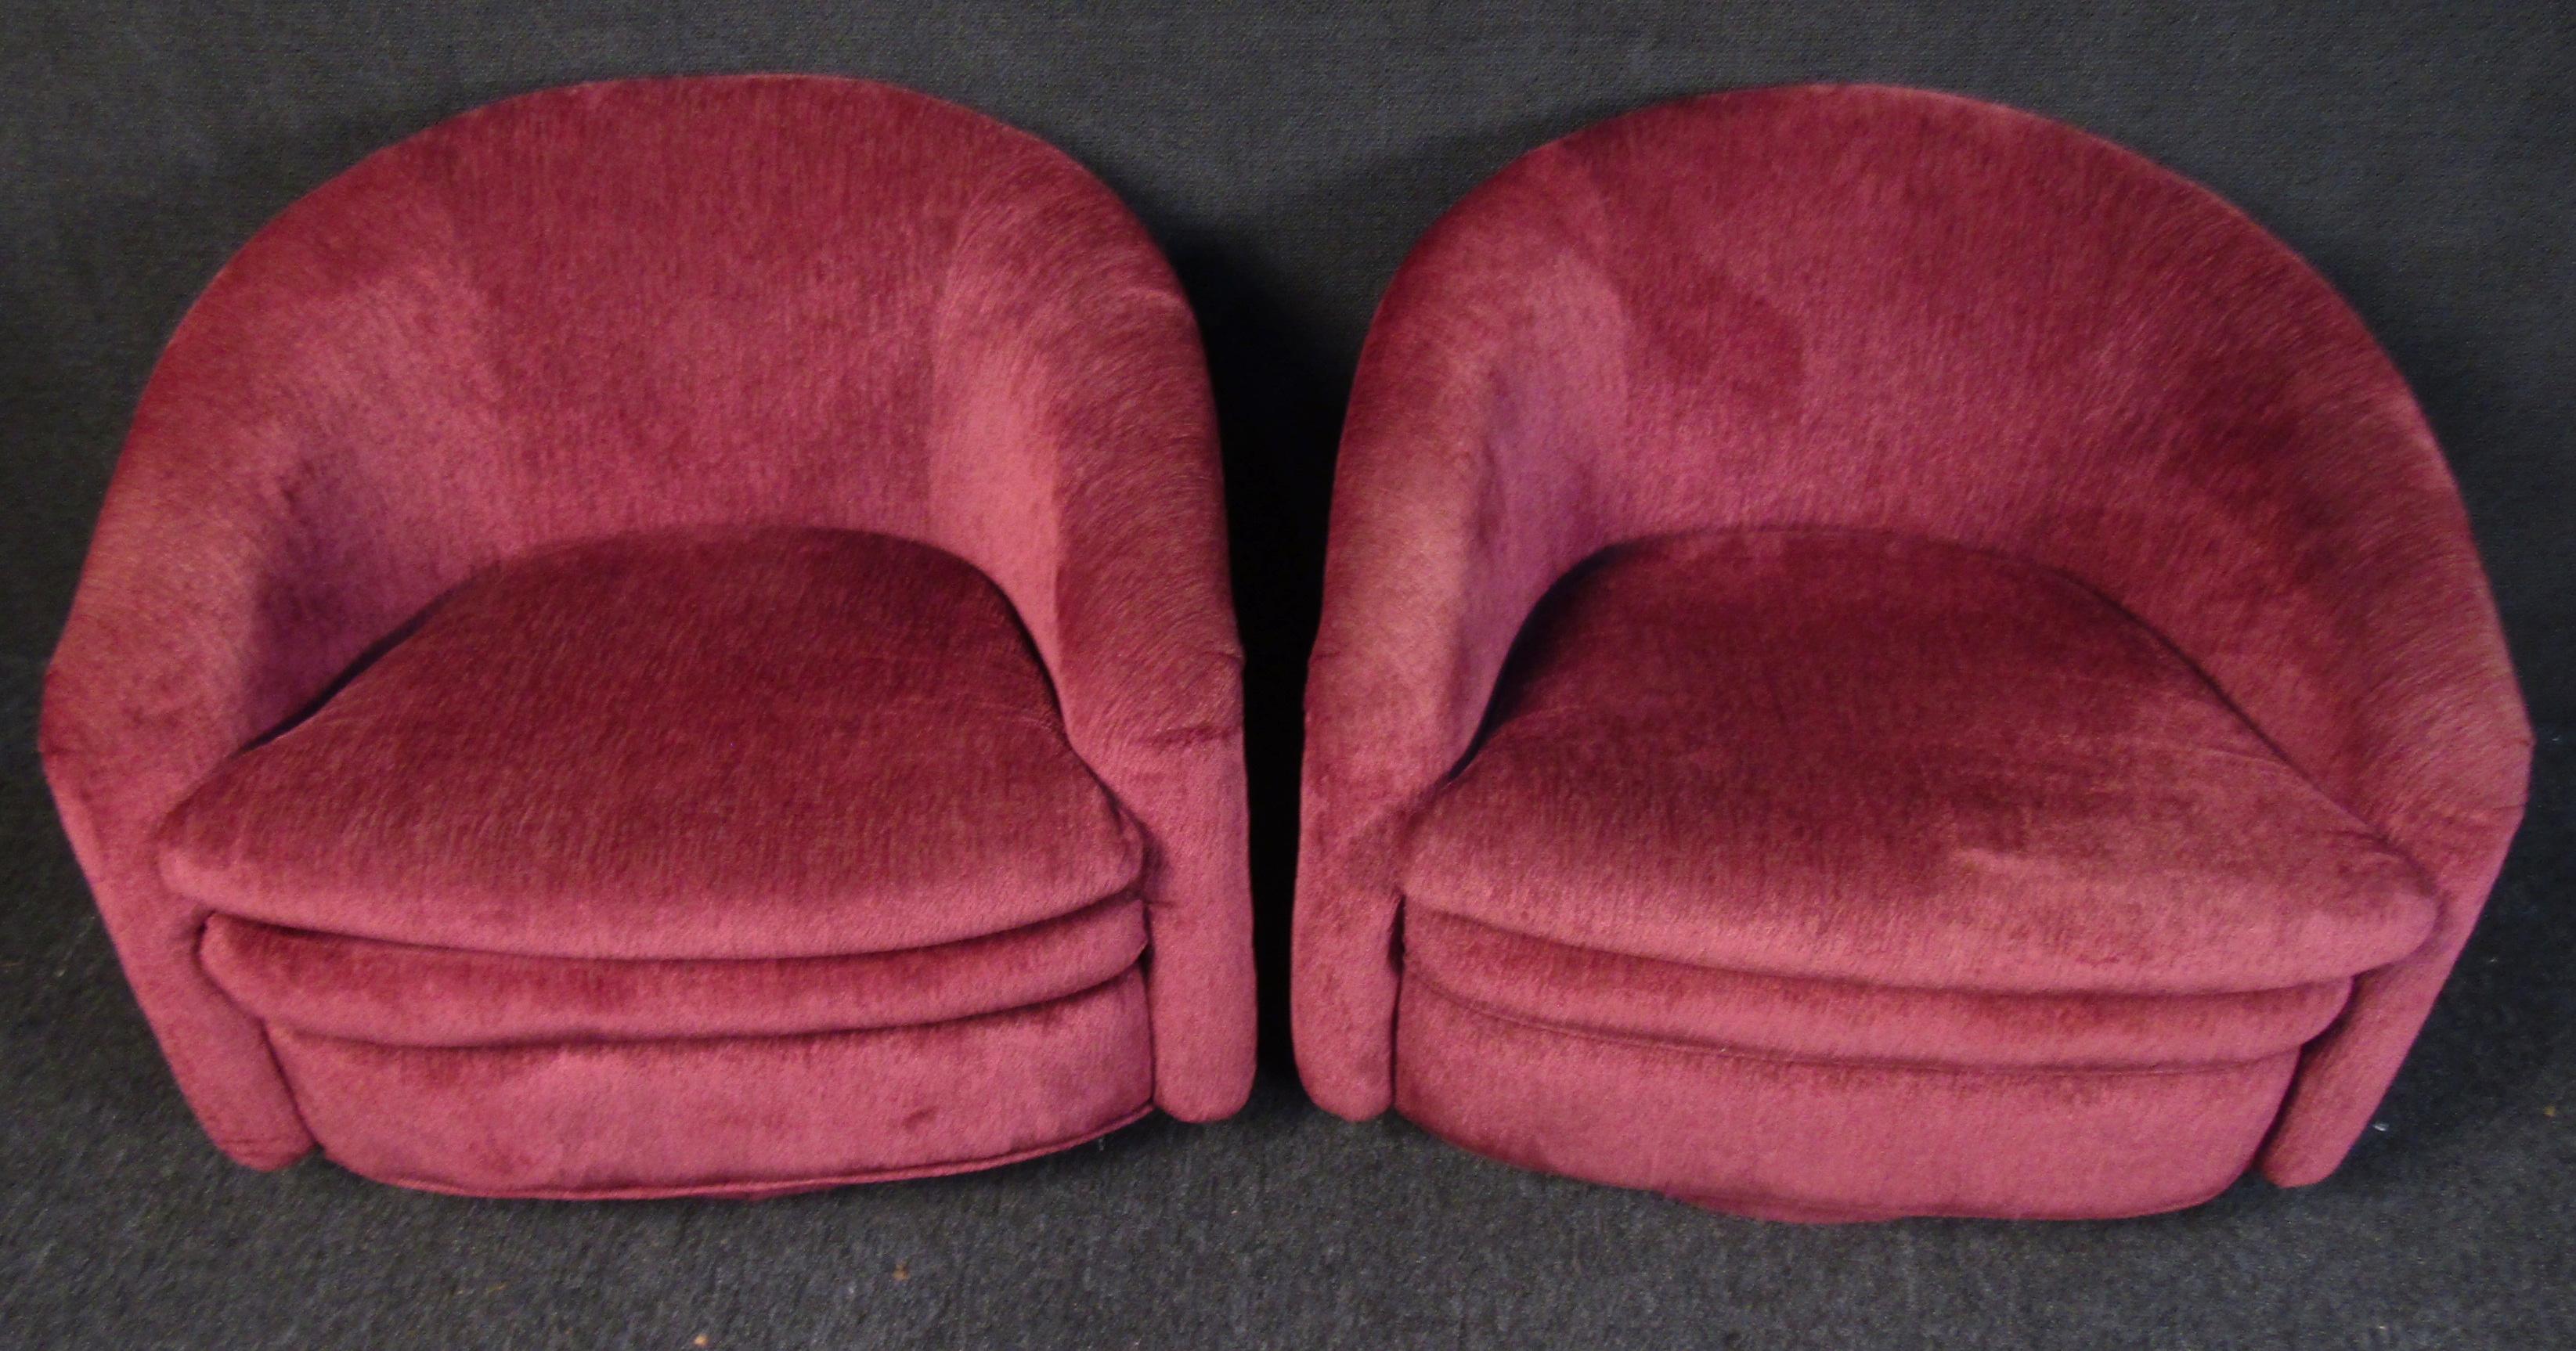 Einzigartige moderne Vintage-Sessel. Diese plüschigen Loungesessel sind mit einem leuchtend kastanienbraunen Stoff bezogen und in erstaunlichem Zustand. Drehbare Untergestelle sorgen für zusätzliche Funktionalität, die perfekten Stühle für